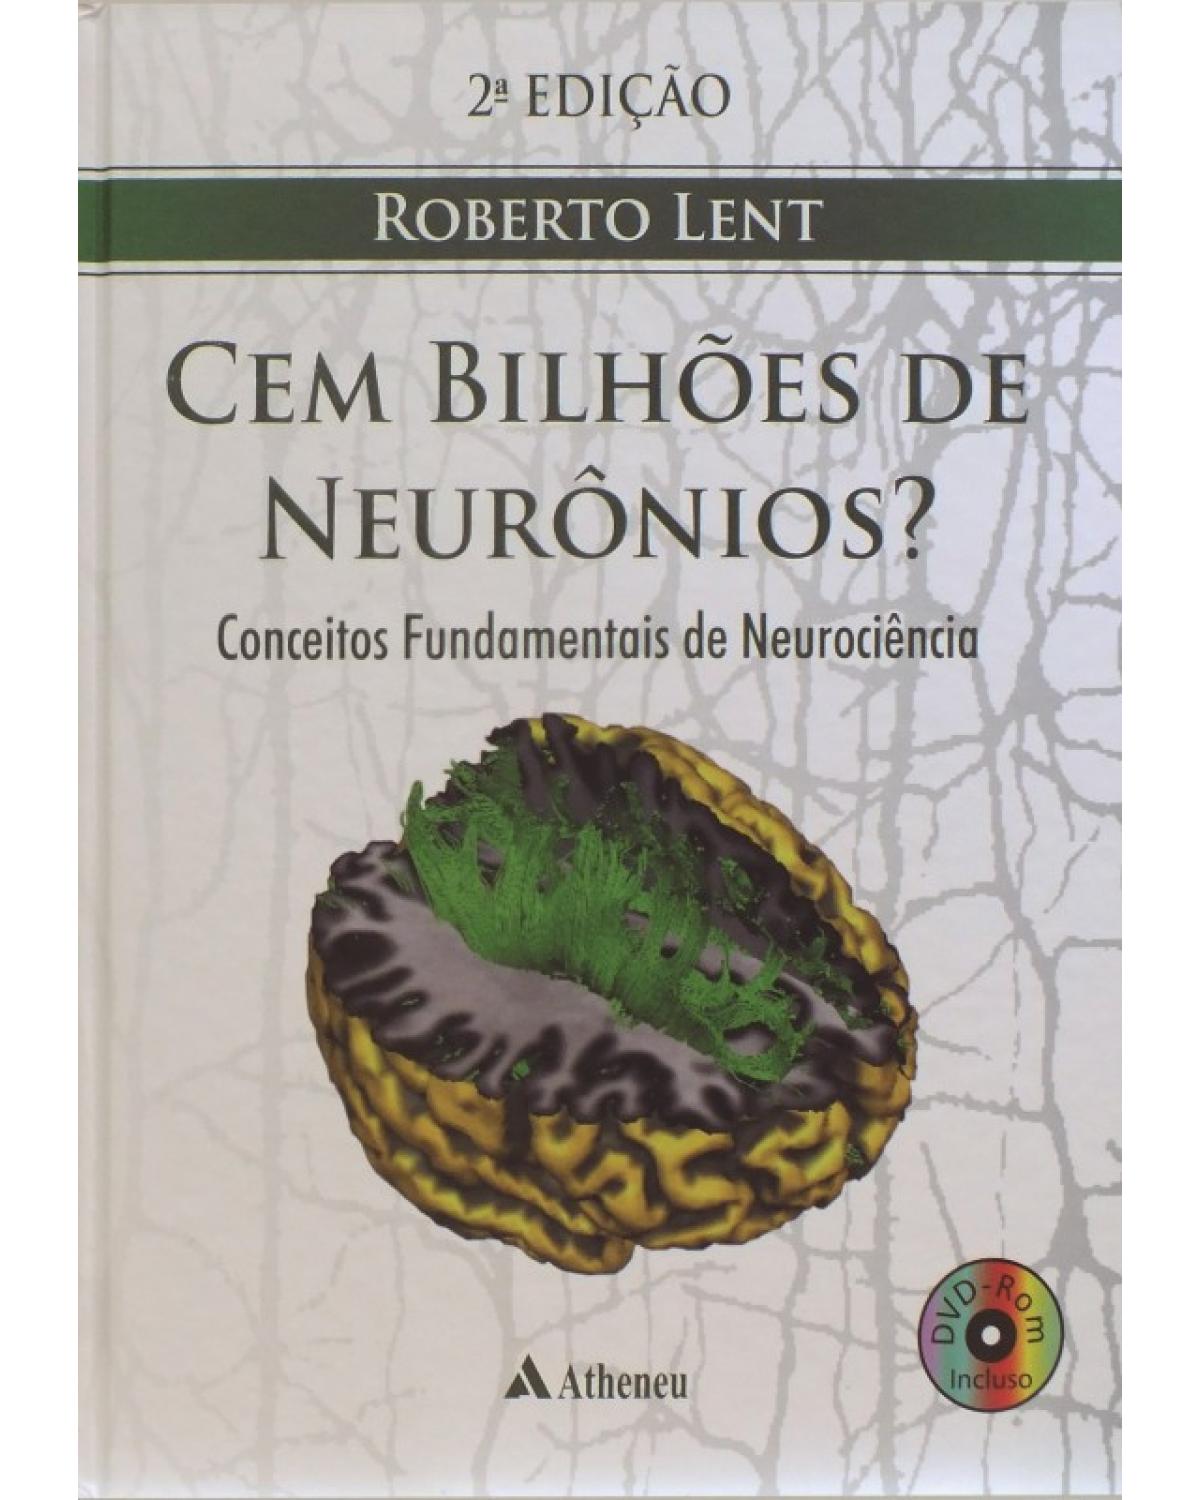 Cem bilhões de neurônios? - conceitos fundamentais de neurociência - 2ª Edição | 2010